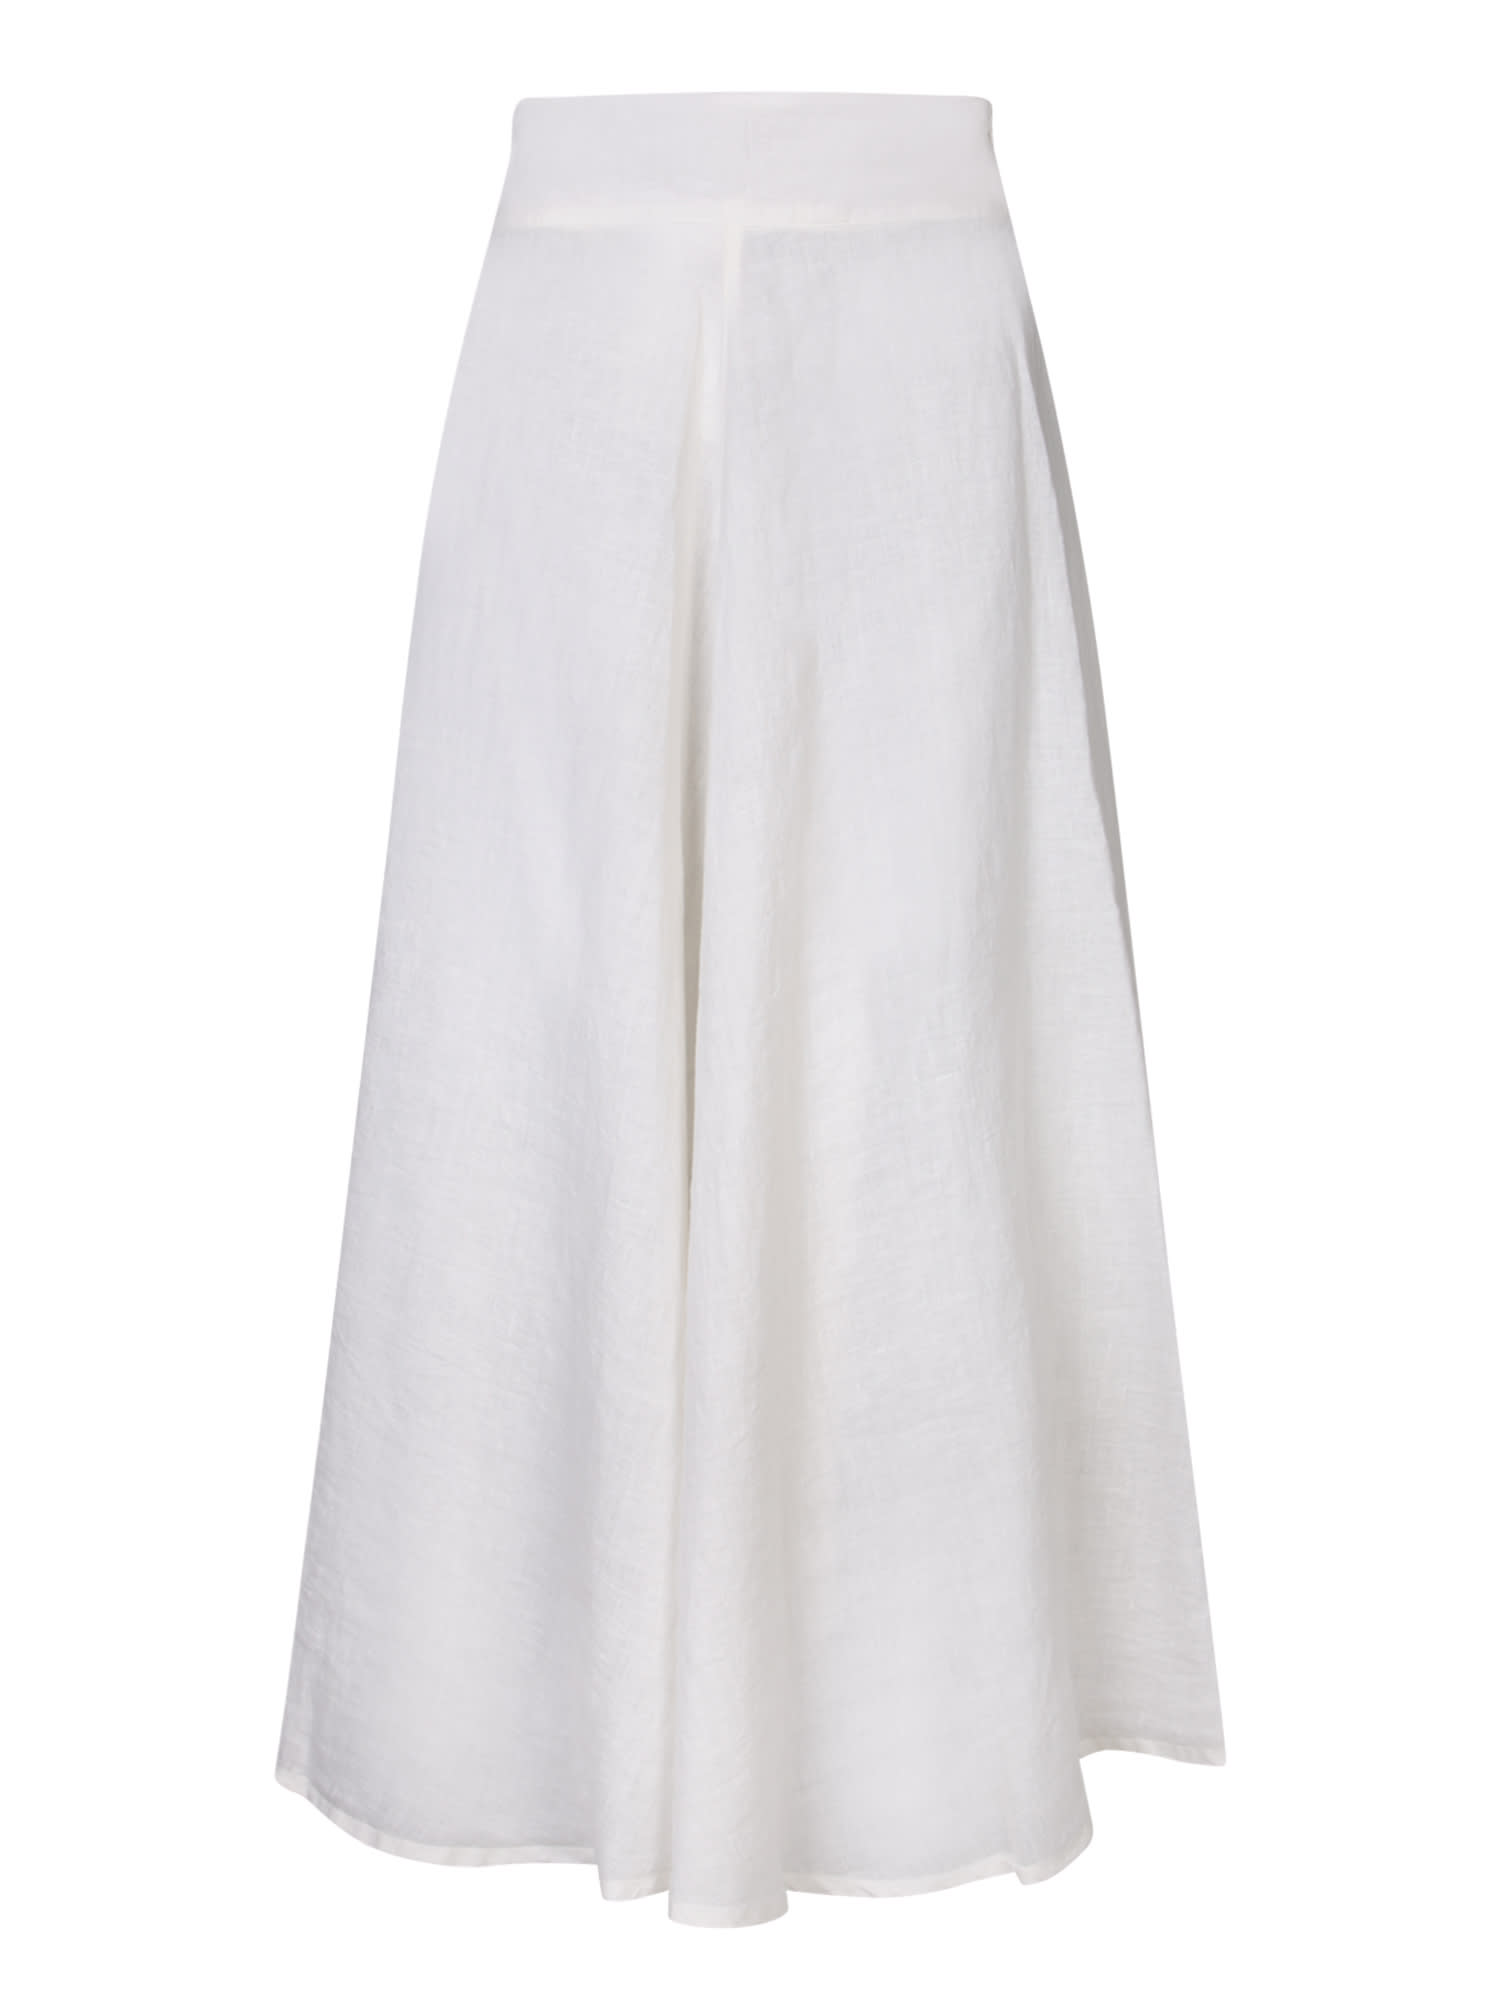 Butter-colored Long Linen Skirt